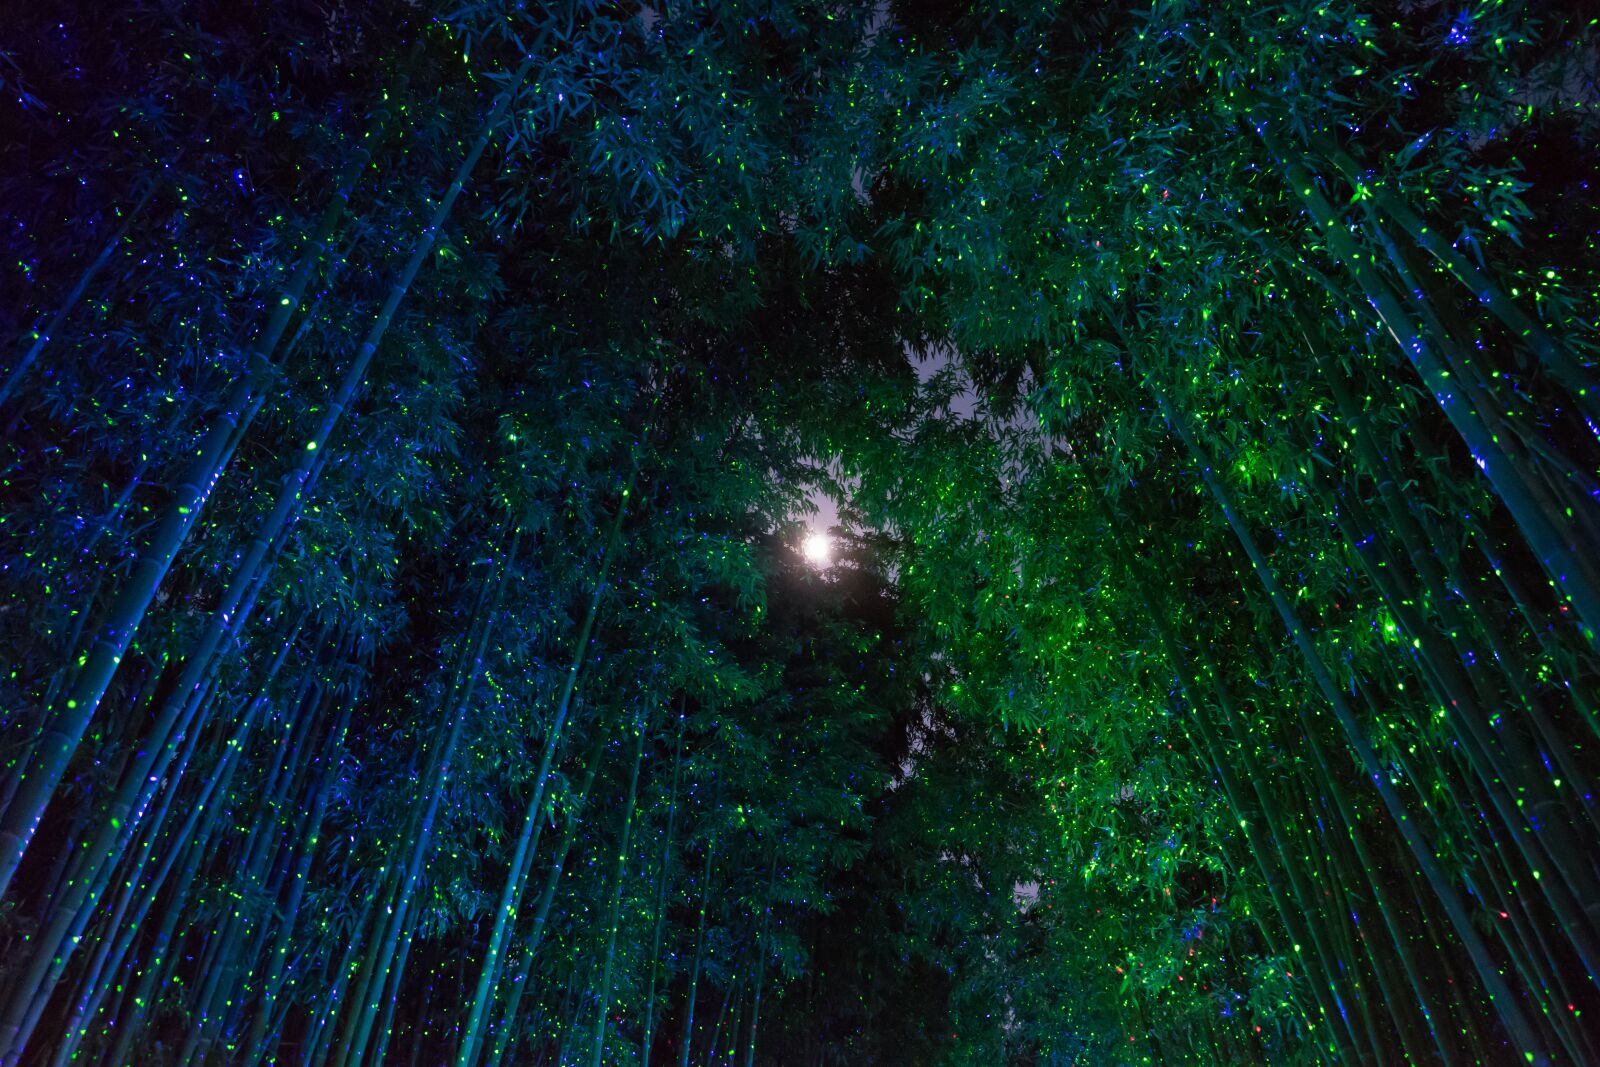 Sony a7 II sample photo. Bamboo, fantasy, moon photography